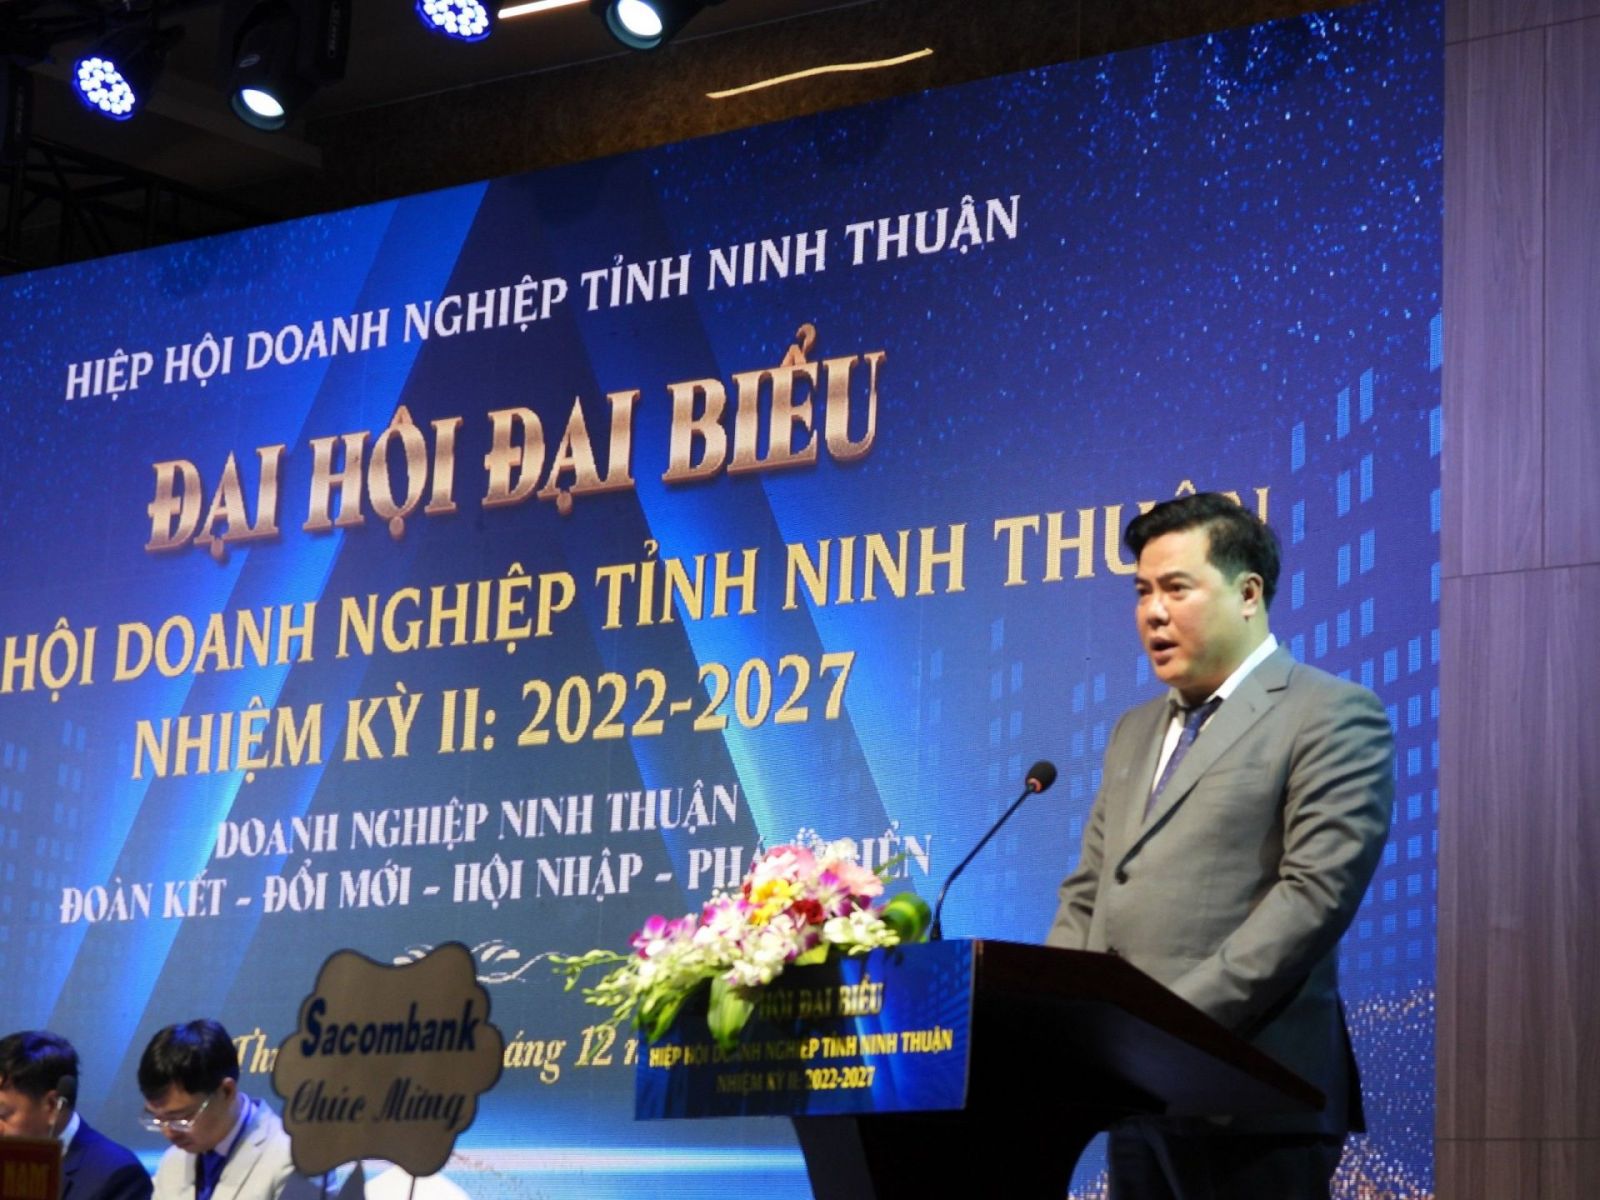 ông Nguyễn Tiến Nghị, Chủ tịch Hiệp hội doanh nghiệp tỉnh Ninh Thuận.